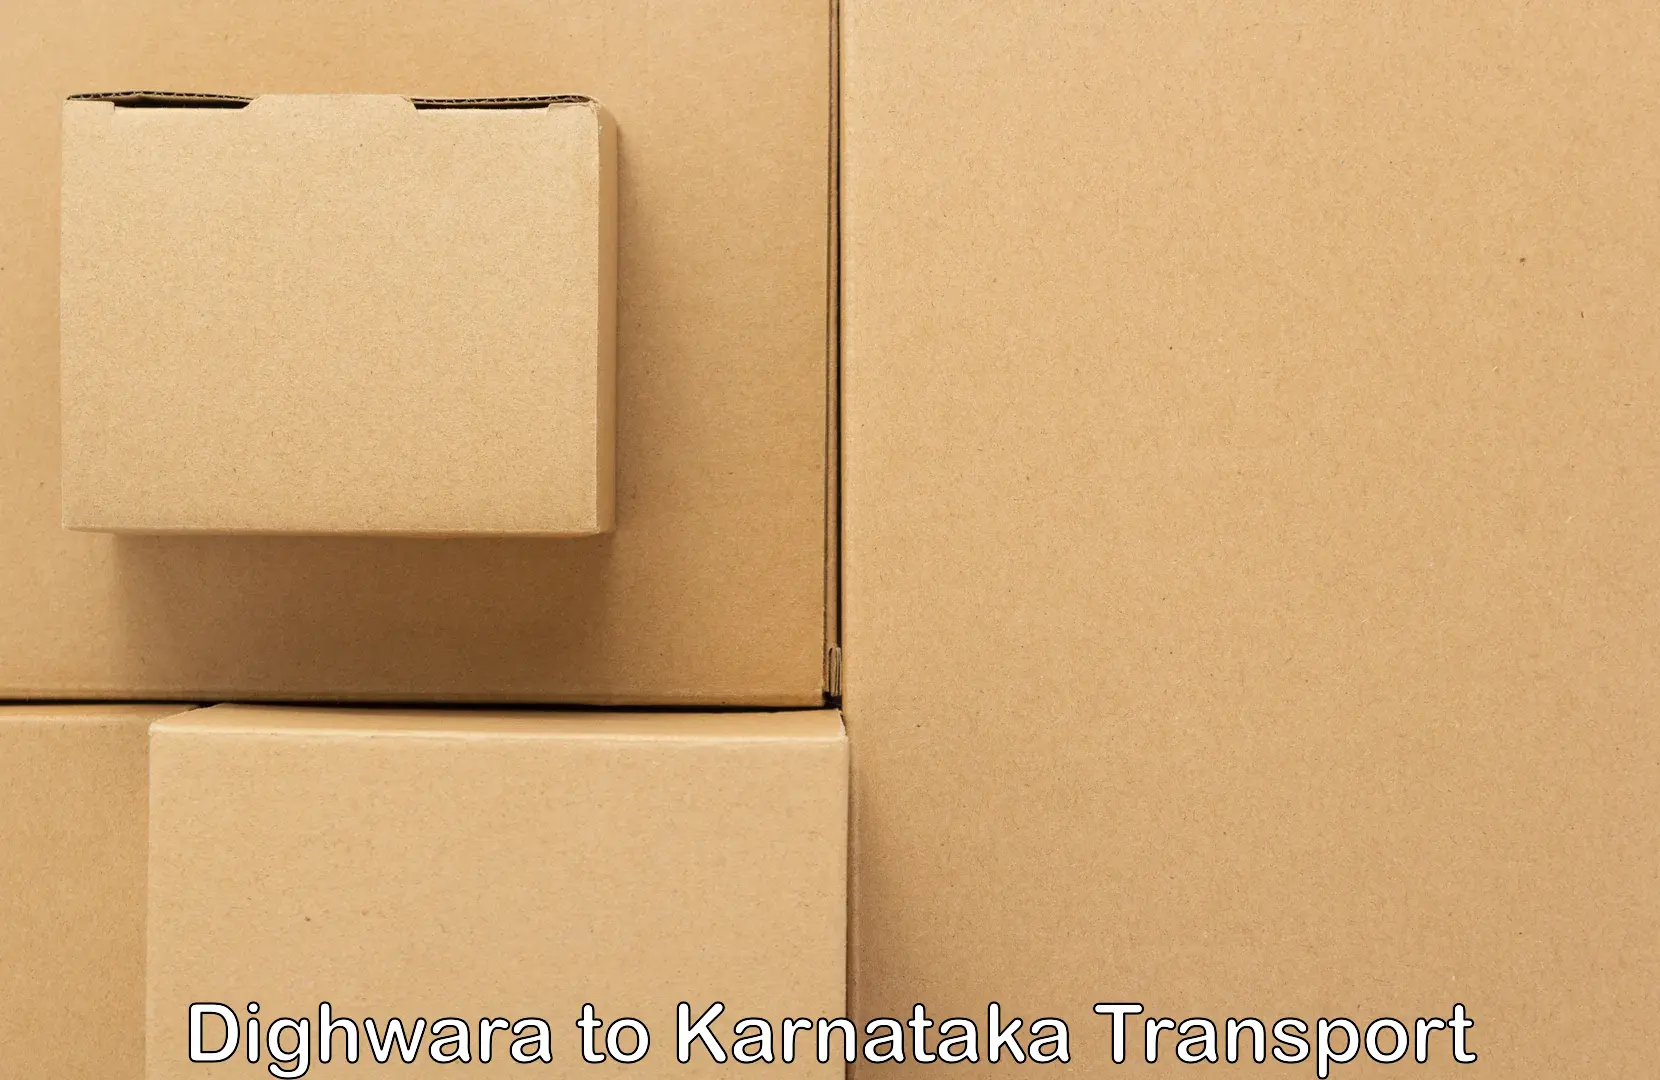 Online transport service Dighwara to Saraswathipuram